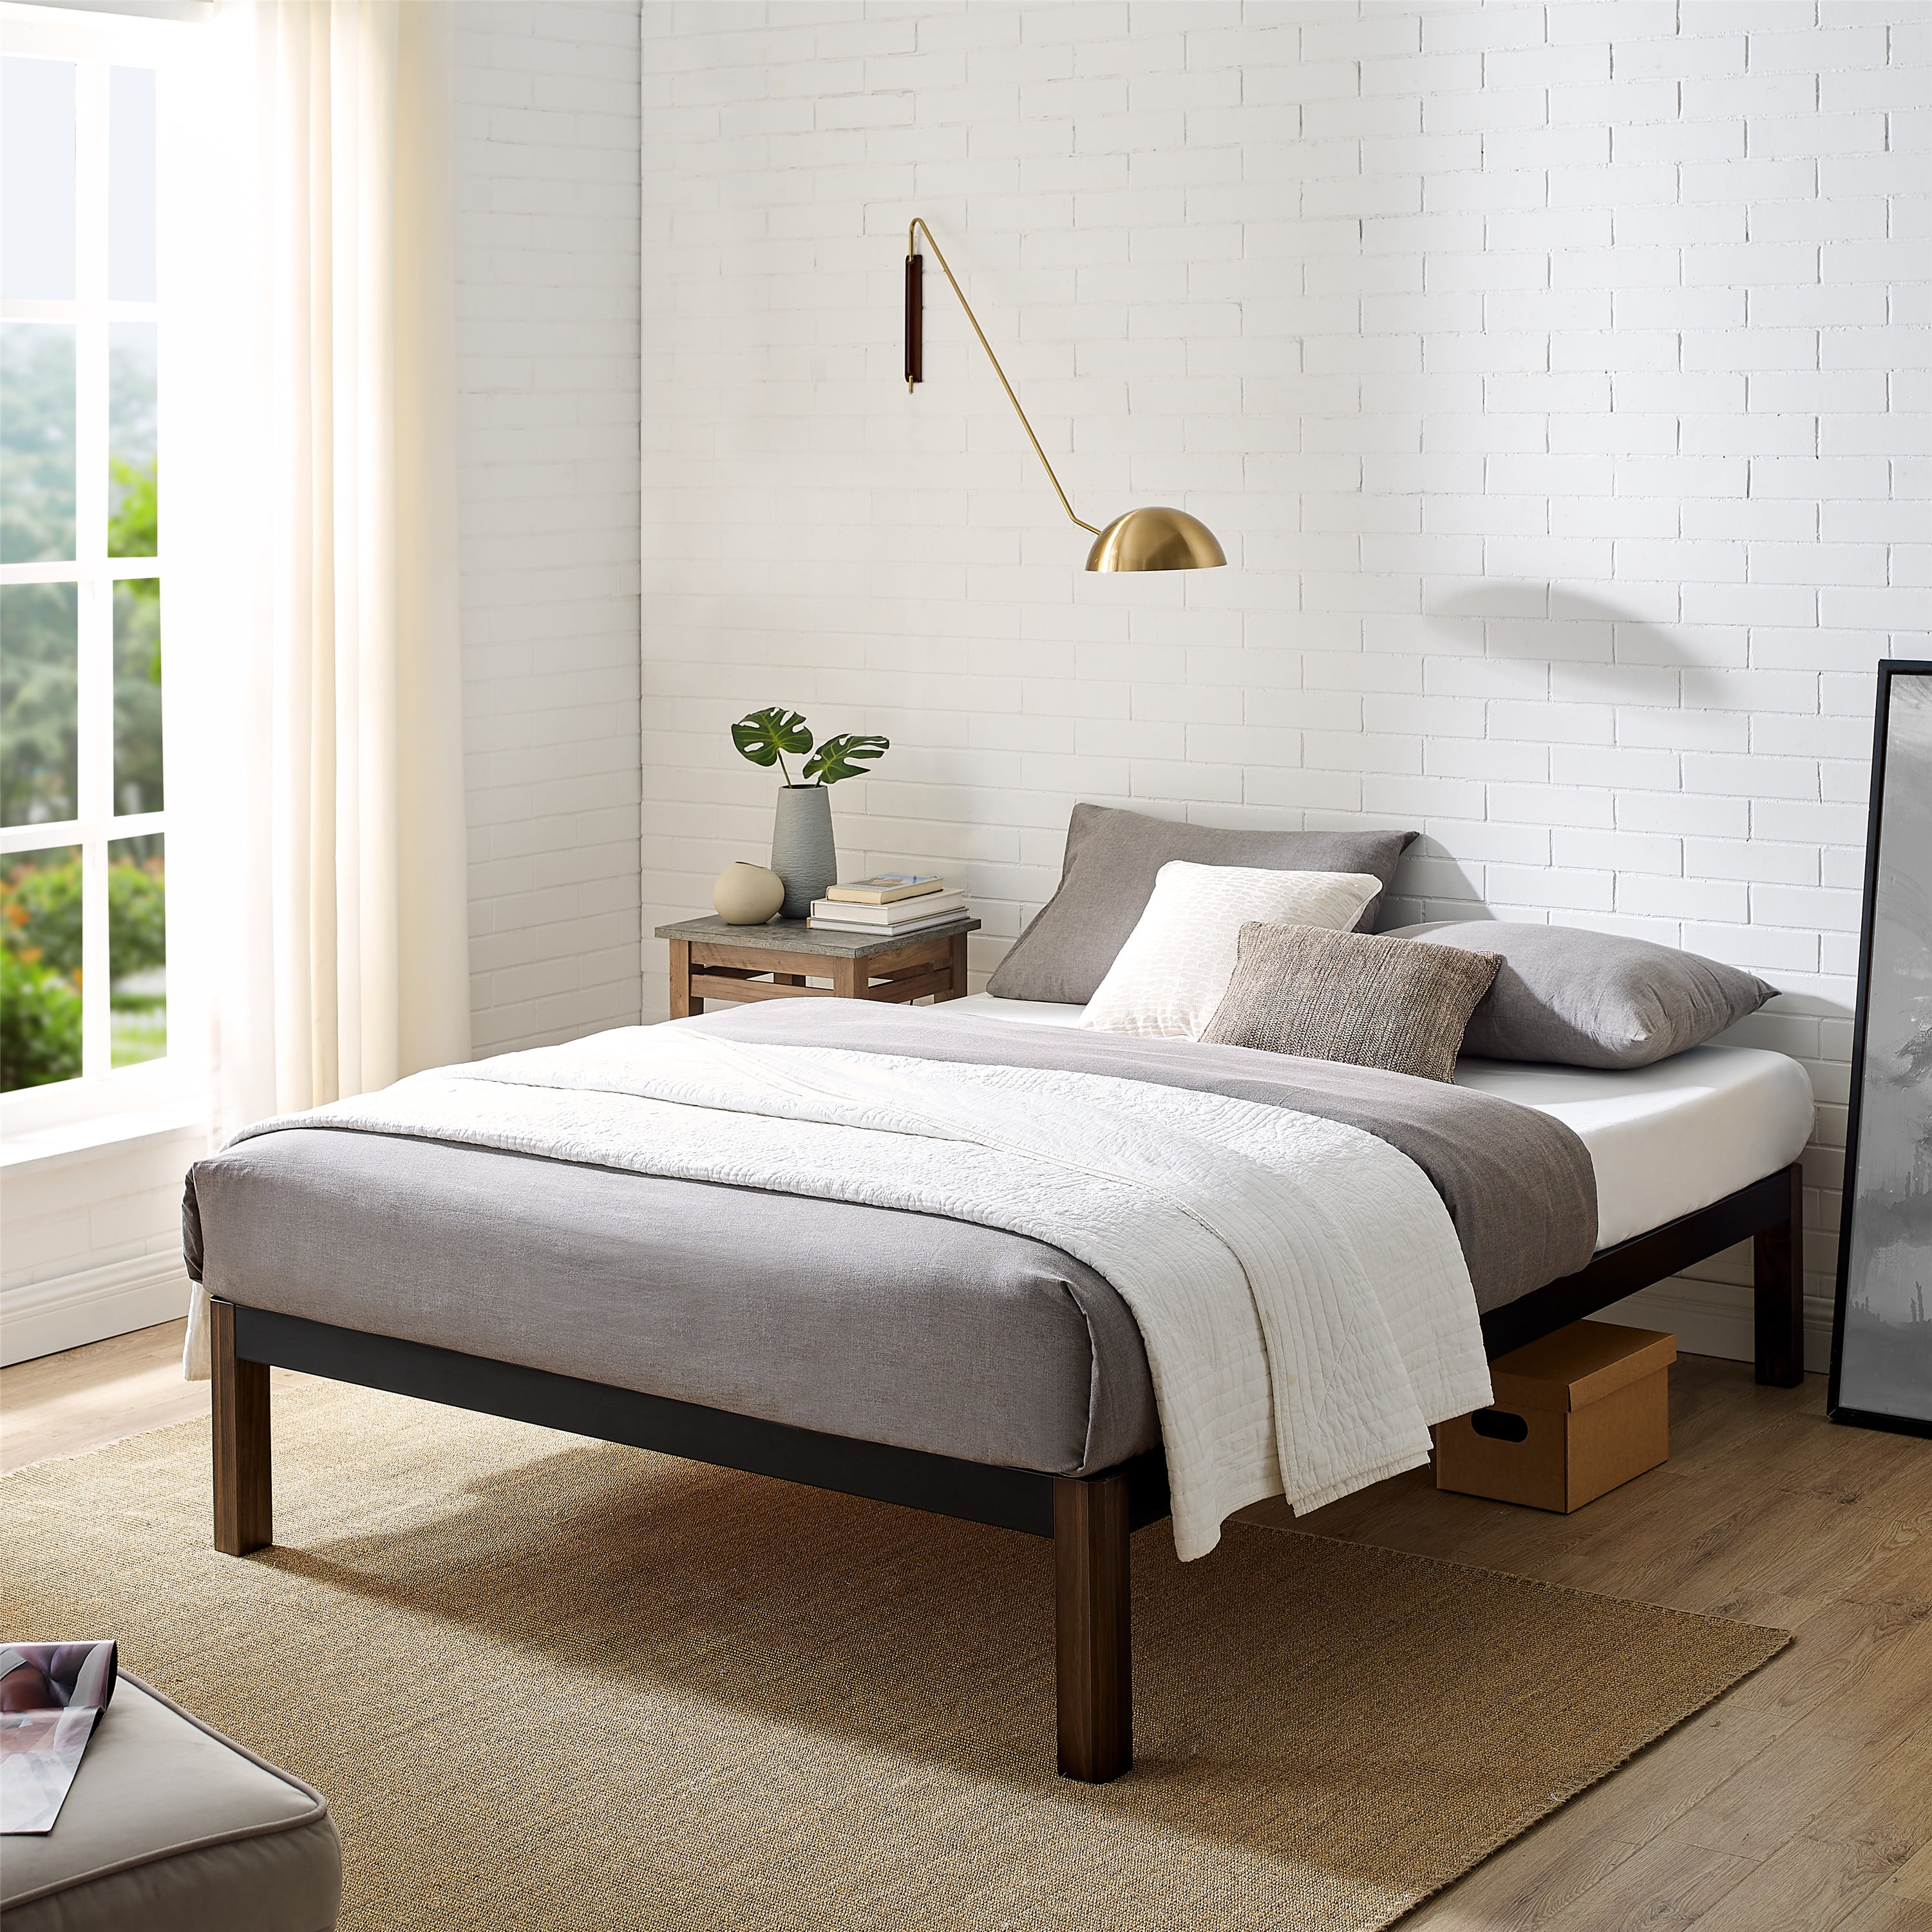 Black Full Size Metal Bed Frame Wood Headboard&Slats Platform Bedroom Furniture 